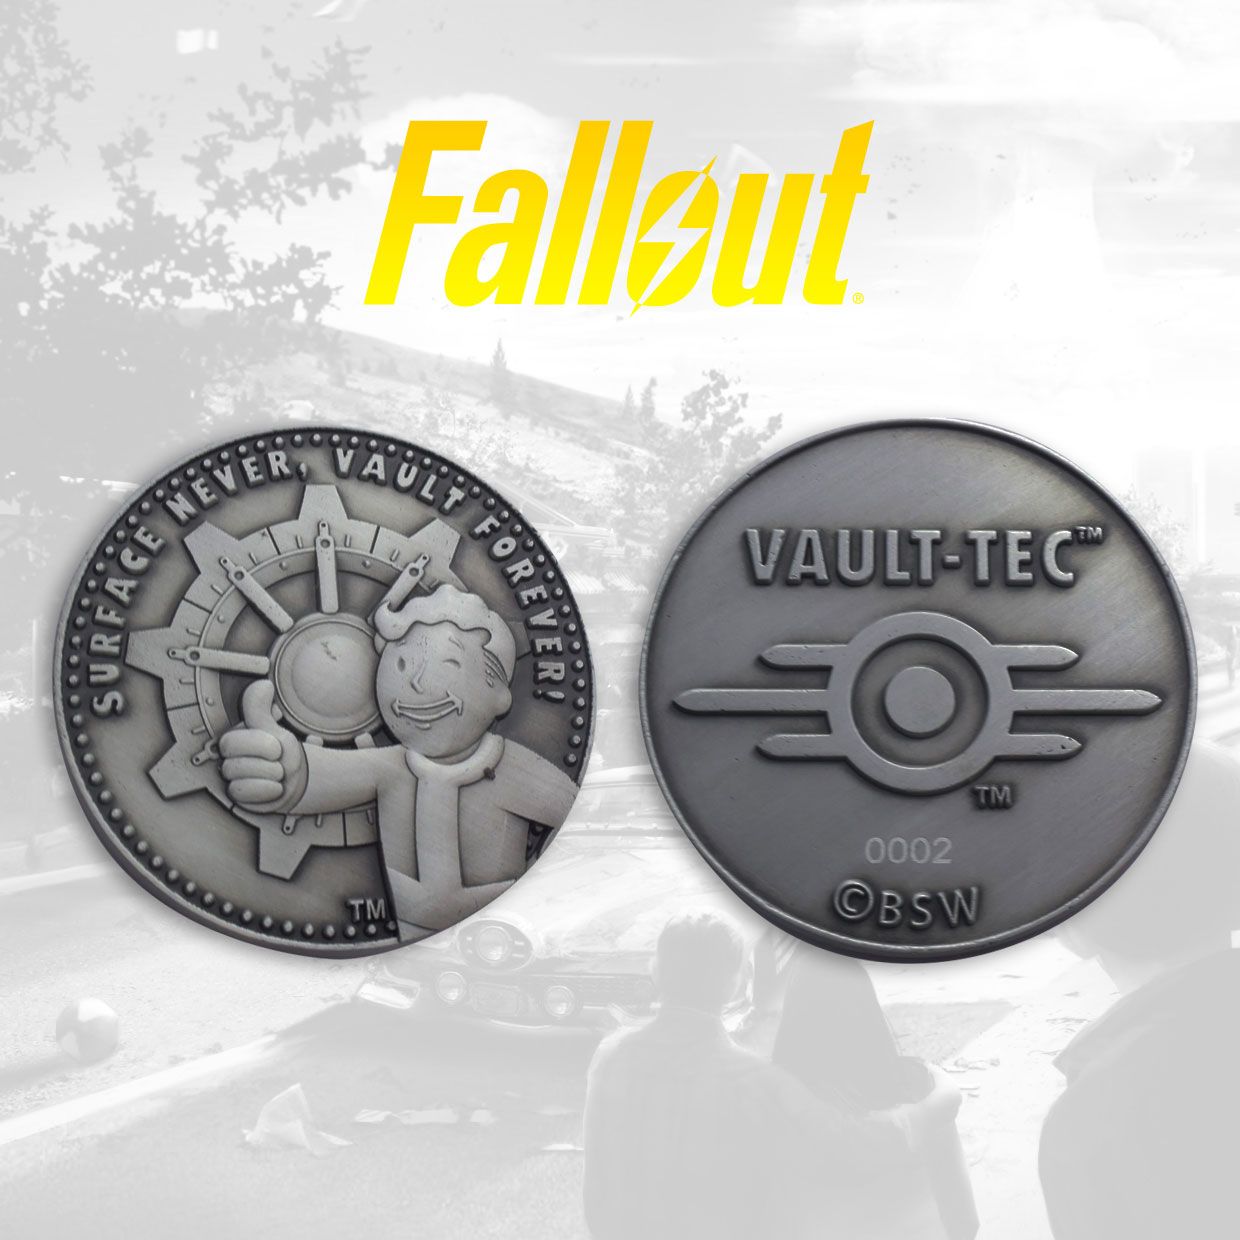 Fallout pice de collection Vault-Tec